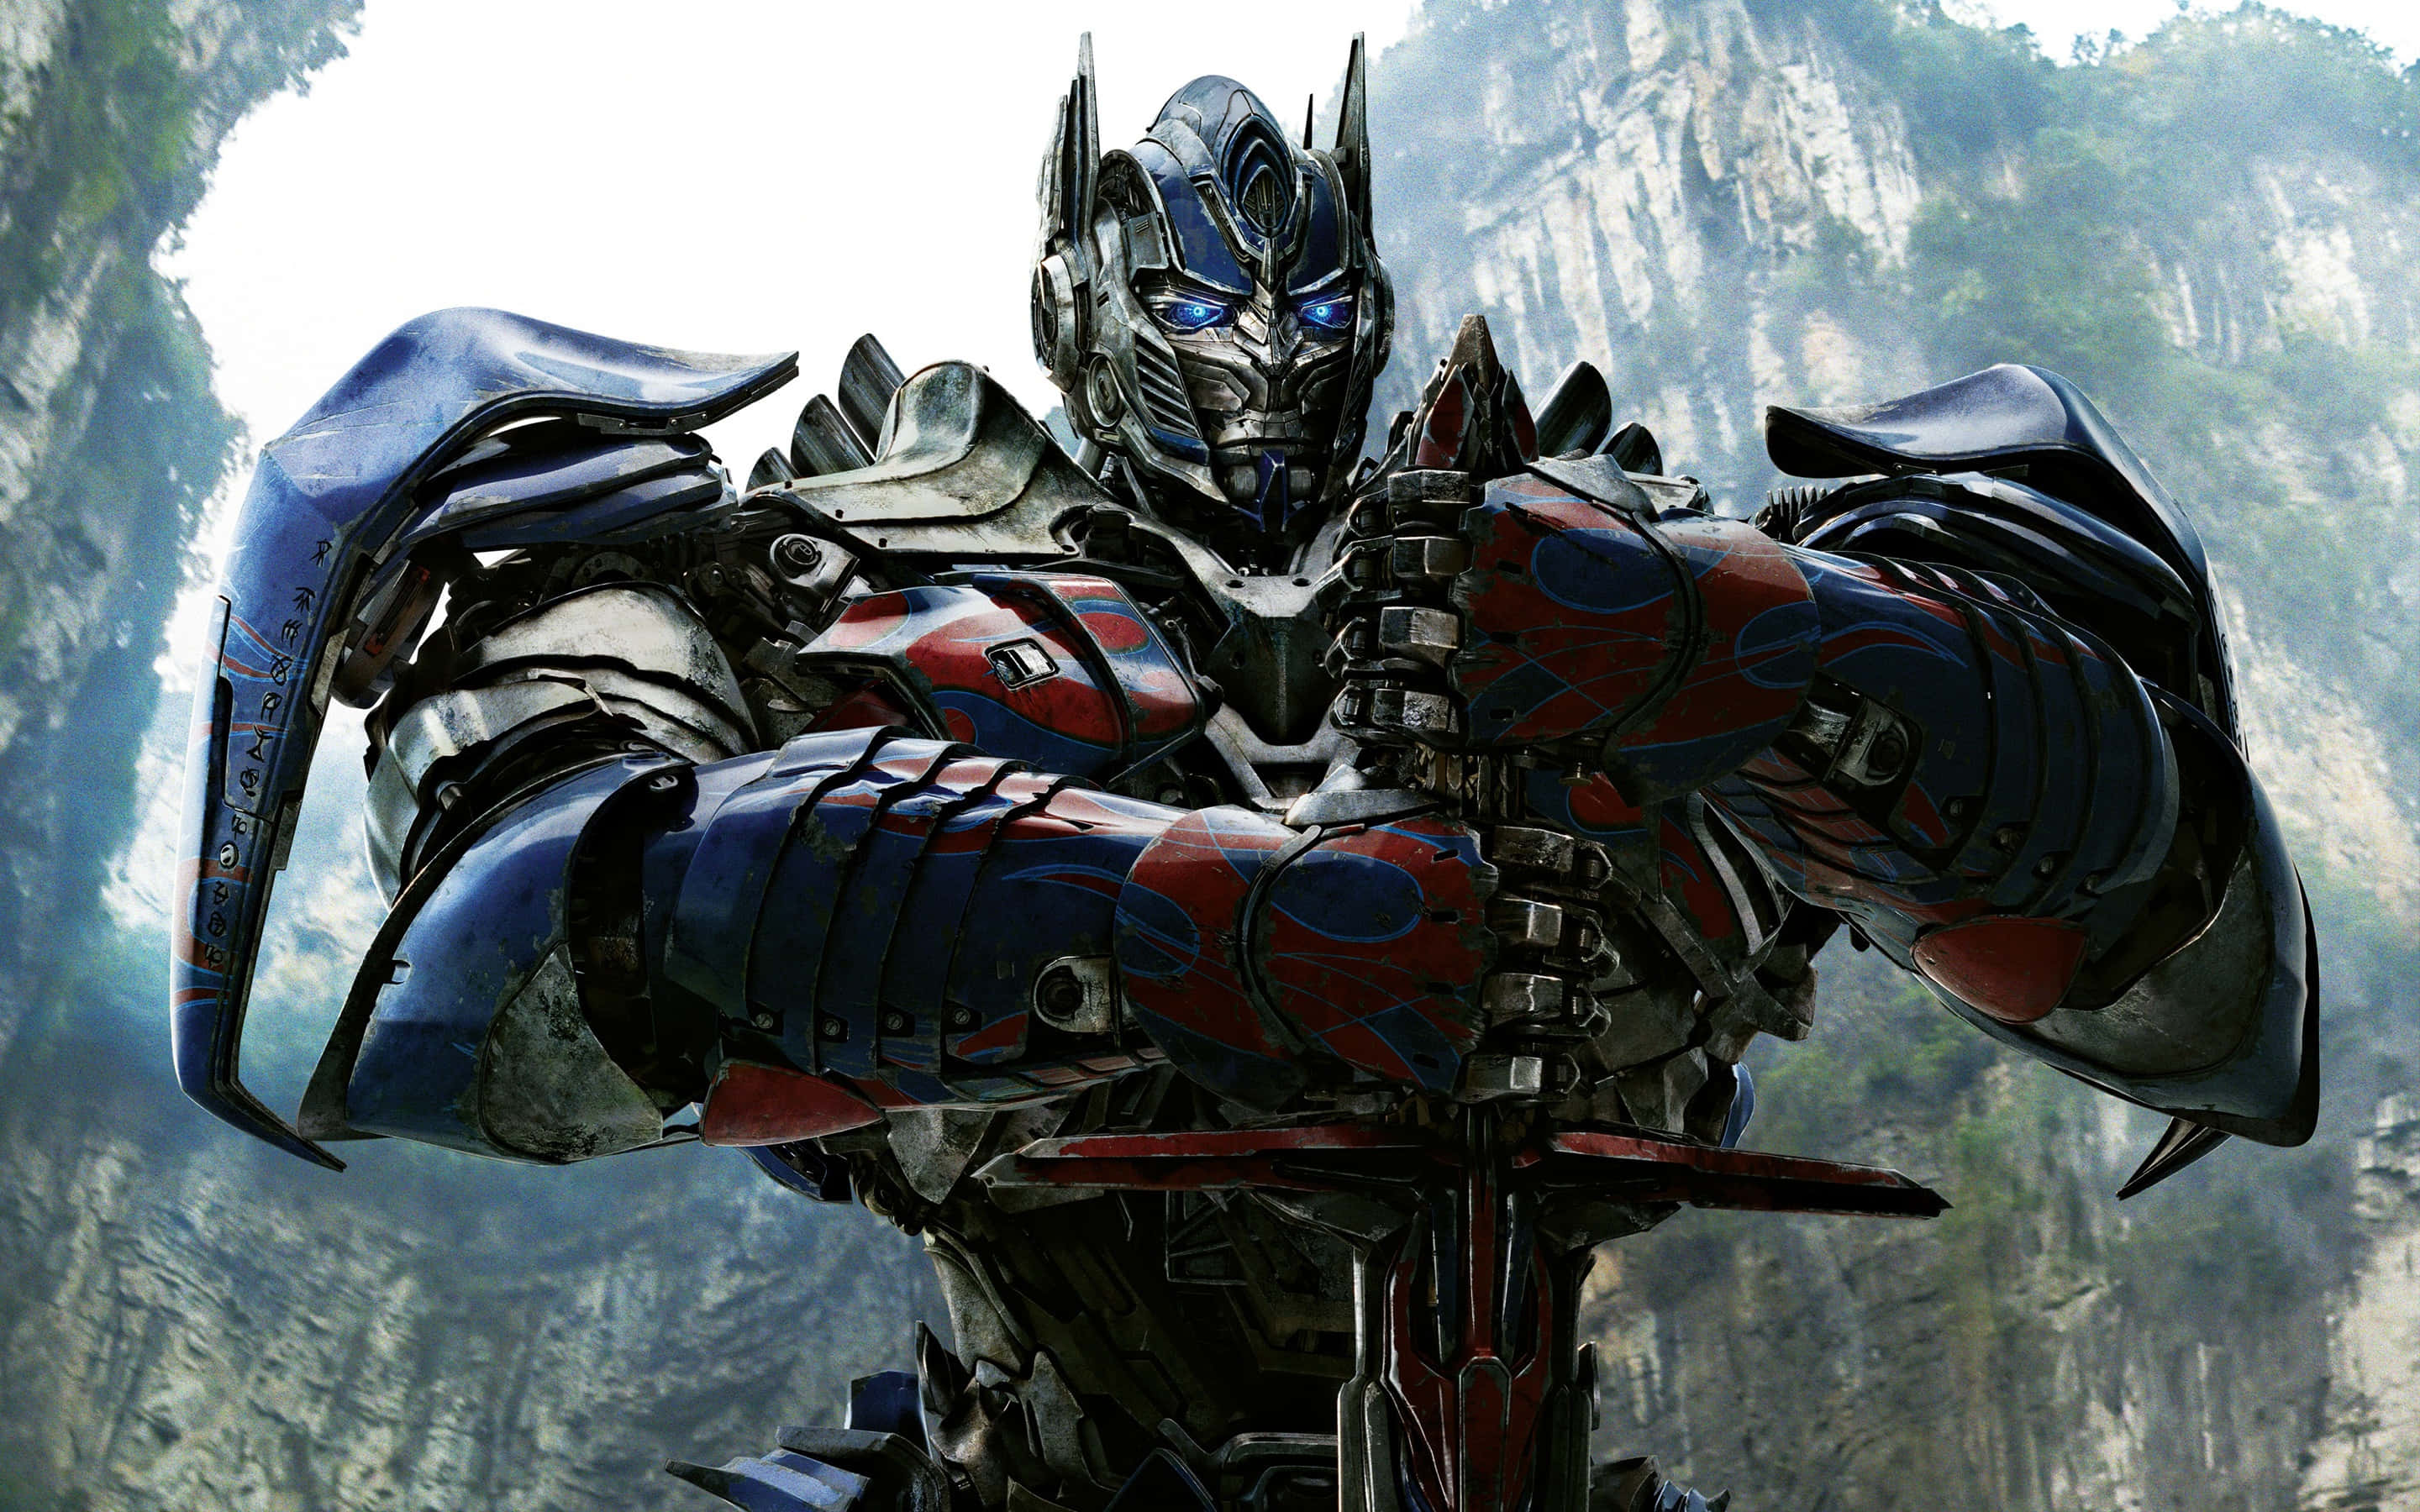 Optimusprime, Leder Af Autobots Fra Transformers Universet.